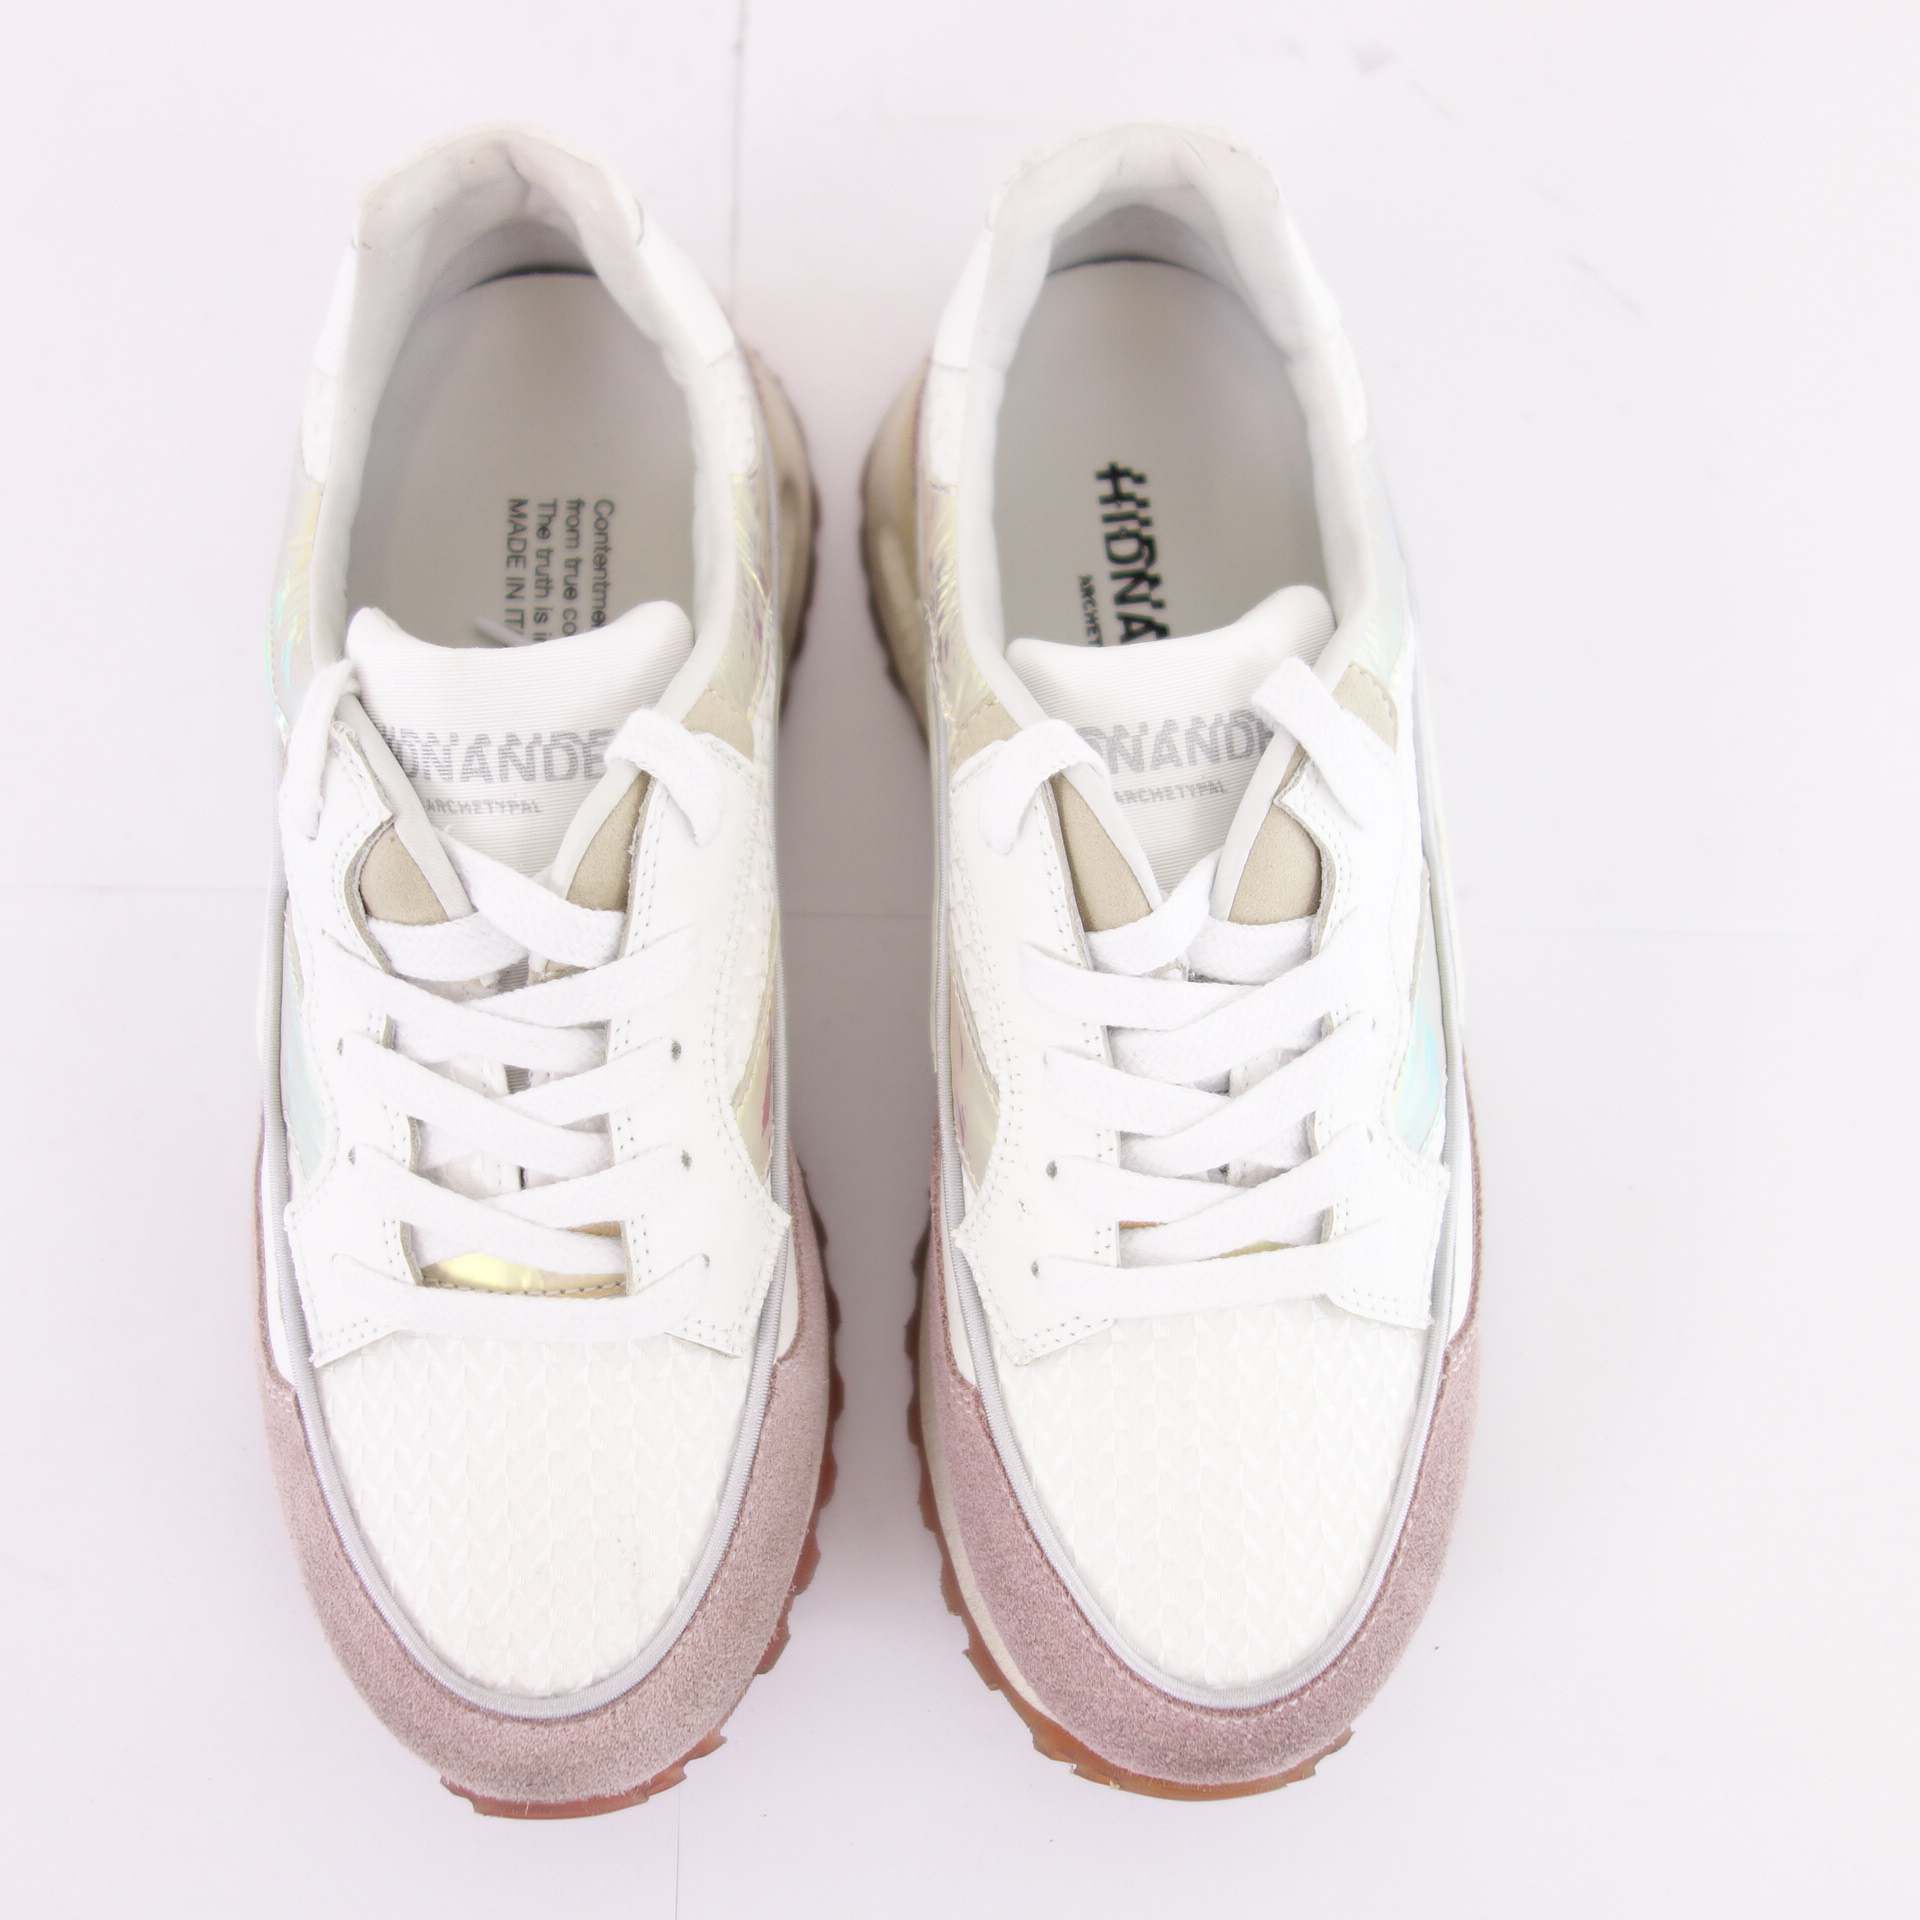 HIDNANDER Damen Schuhe Low Top Sneaker Sportschuhe Leder Textil Modell Threedome Weiß Rosa